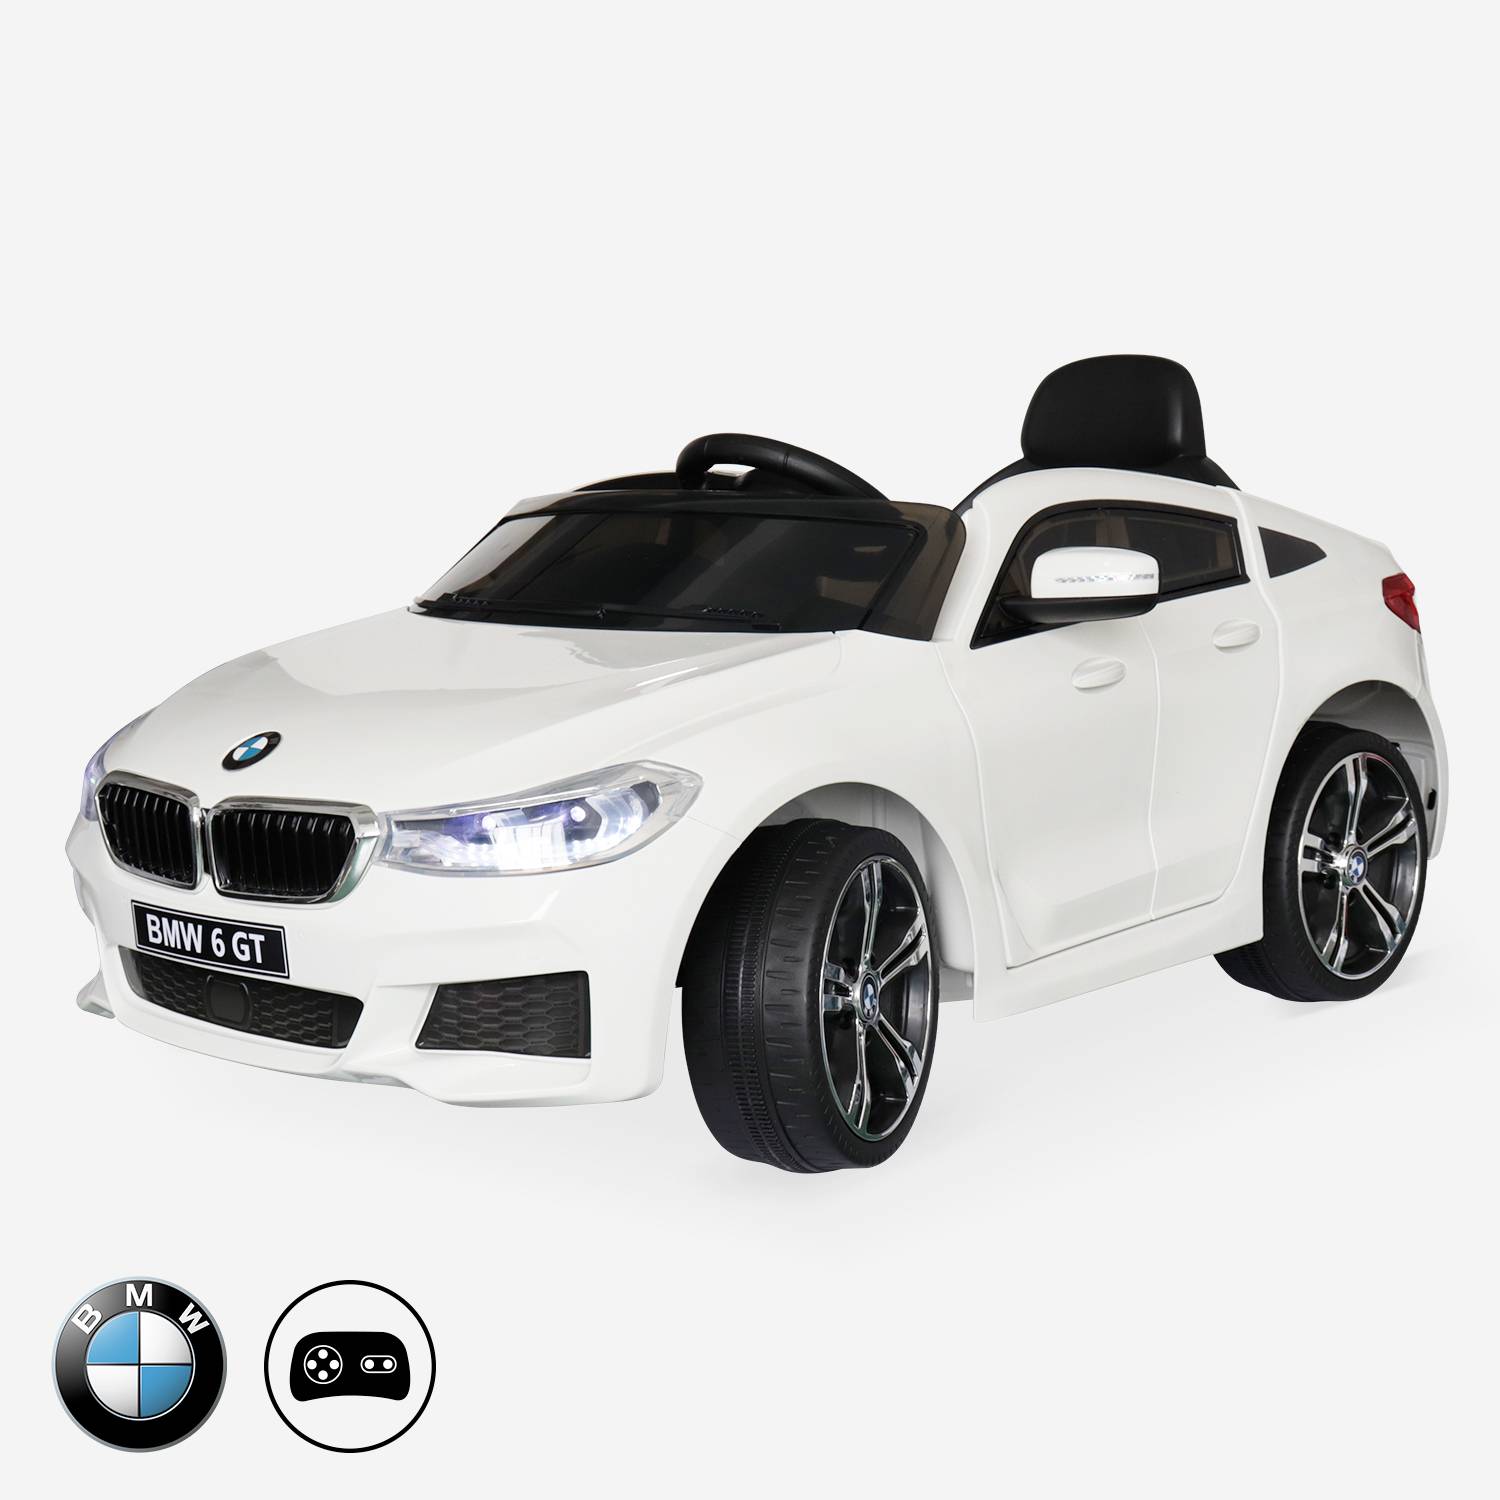 BMW GT6 Gran Turismo blanco, coche eléctrico 12V, 1 plaza, descapotable para niños con autorradio y mando a distancia Photo1